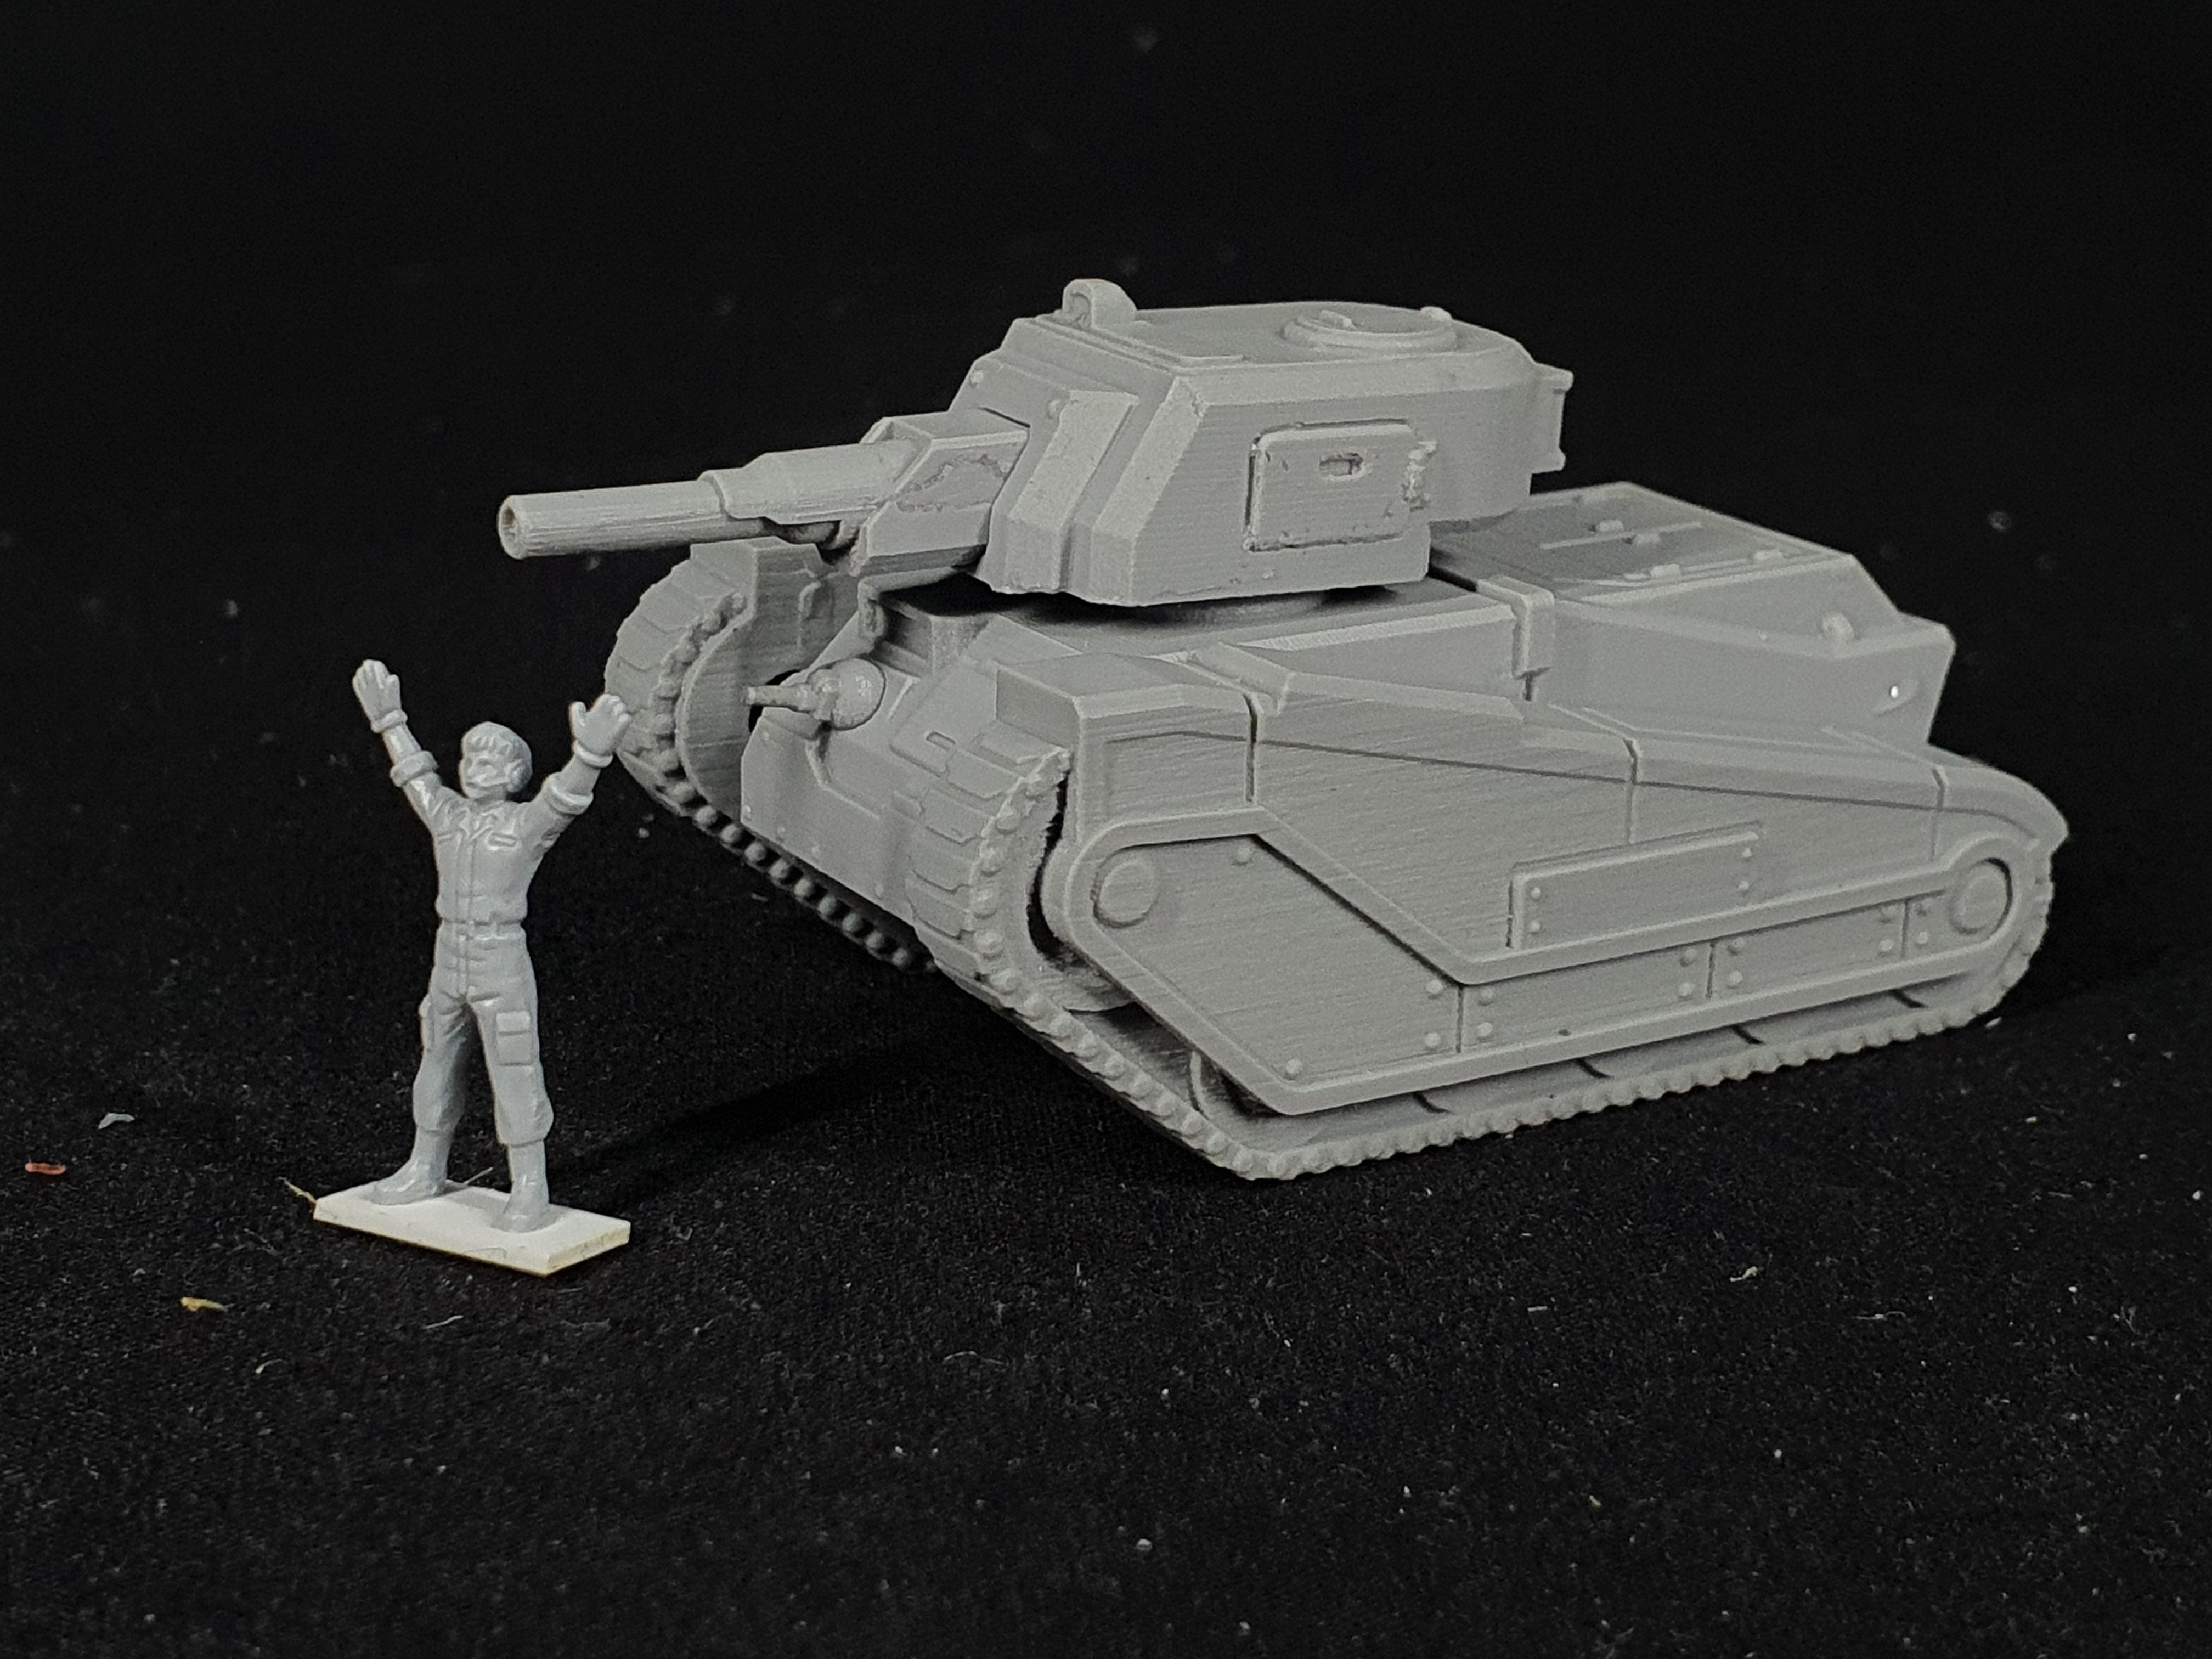 1/100 scale "SQUIRE" battle tank resin model kit. Field of fire